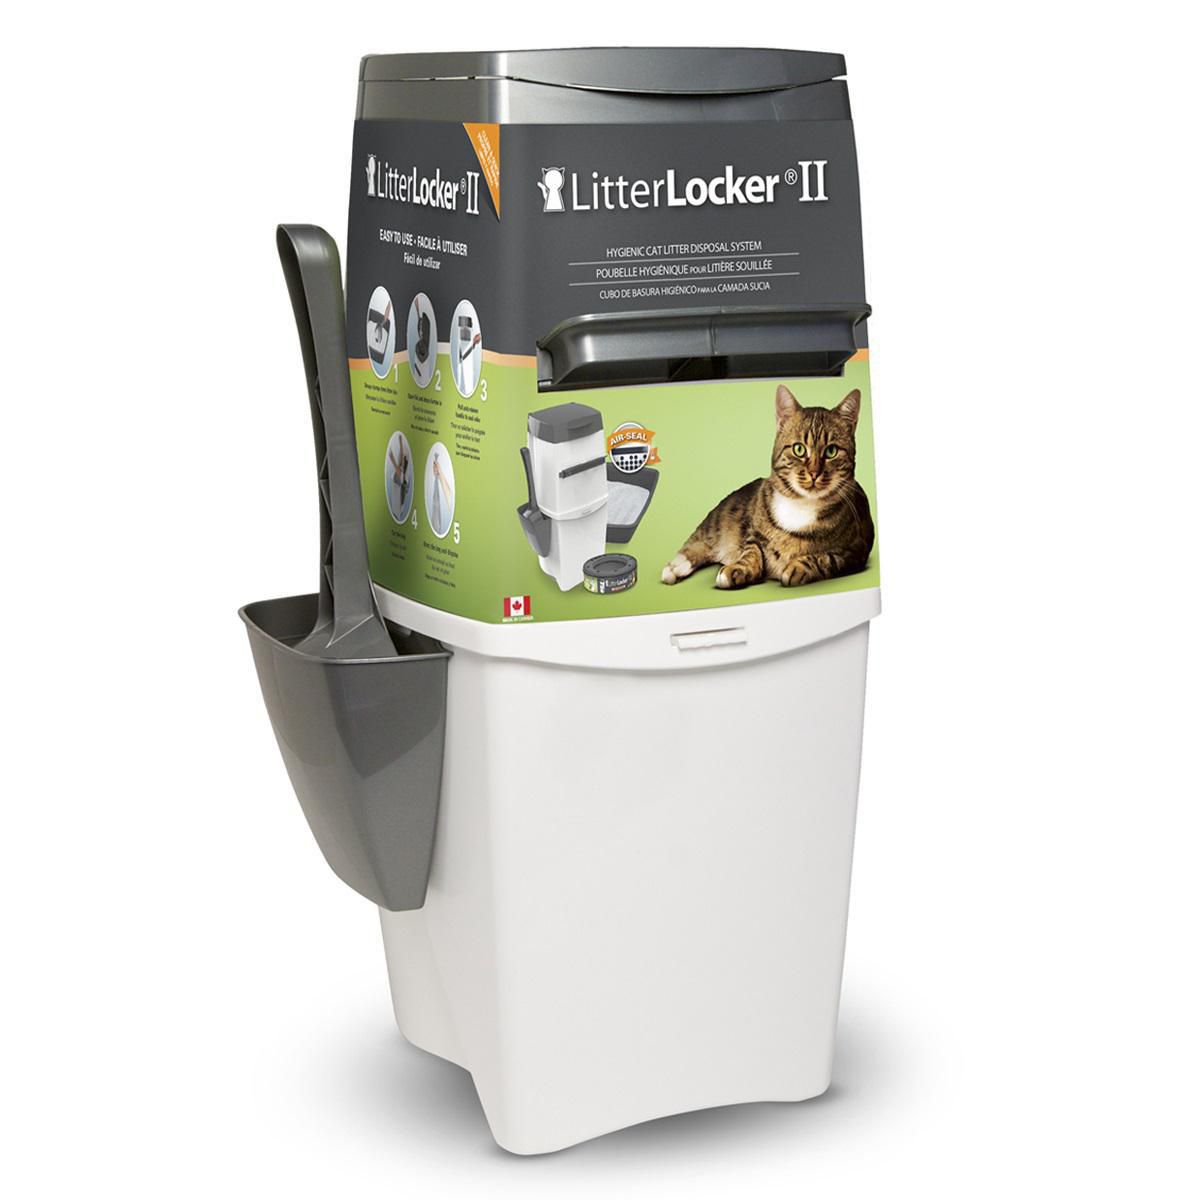 How to use Litter Locker II 